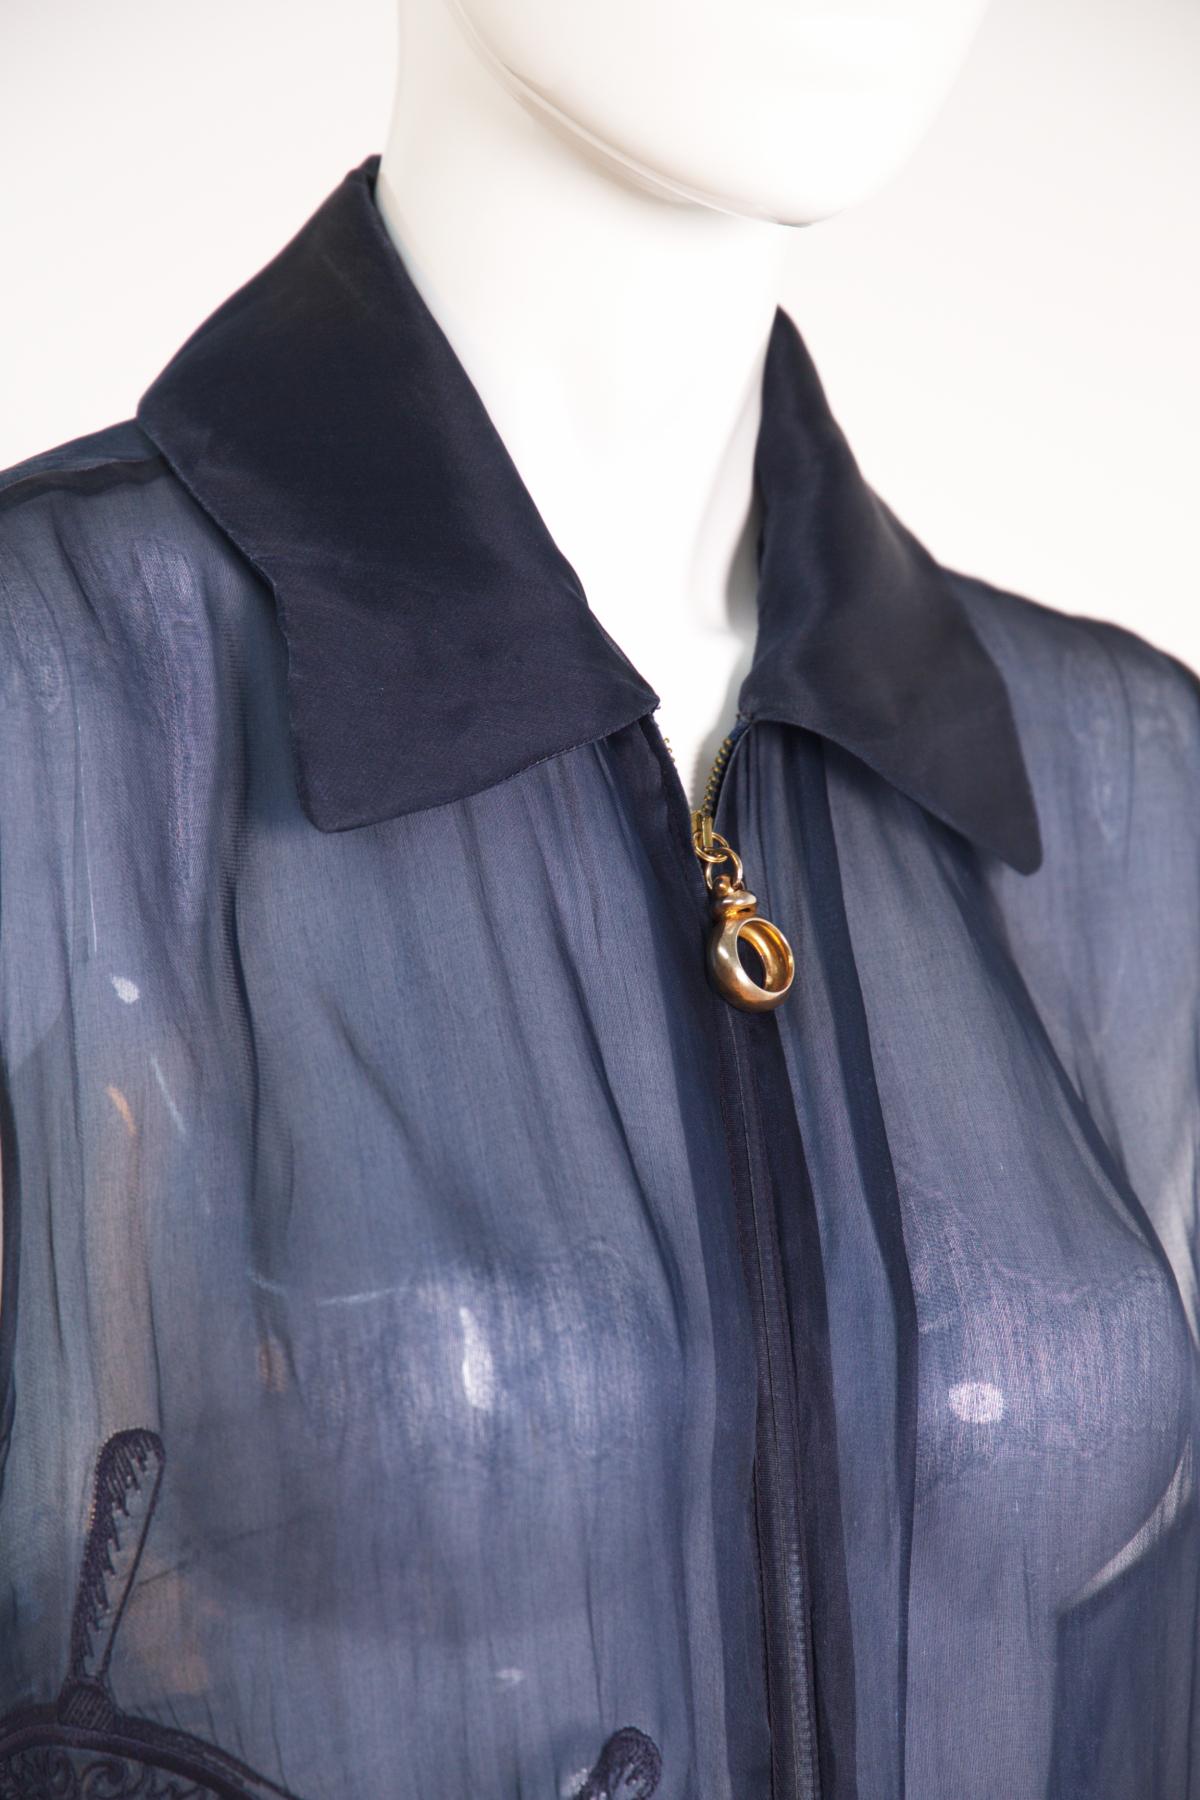 Schöne blaue transparente Vintage-Bluse aus den 1990er Jahren, made in Italy.
Die Bluse hat keine Ärmel und ist wirklich leicht, für die warme Zeit des Jahres.
Die Bluse fällt sanft bis zu den Hüften, wodurch ein sehr sinnlicher und auffälliger